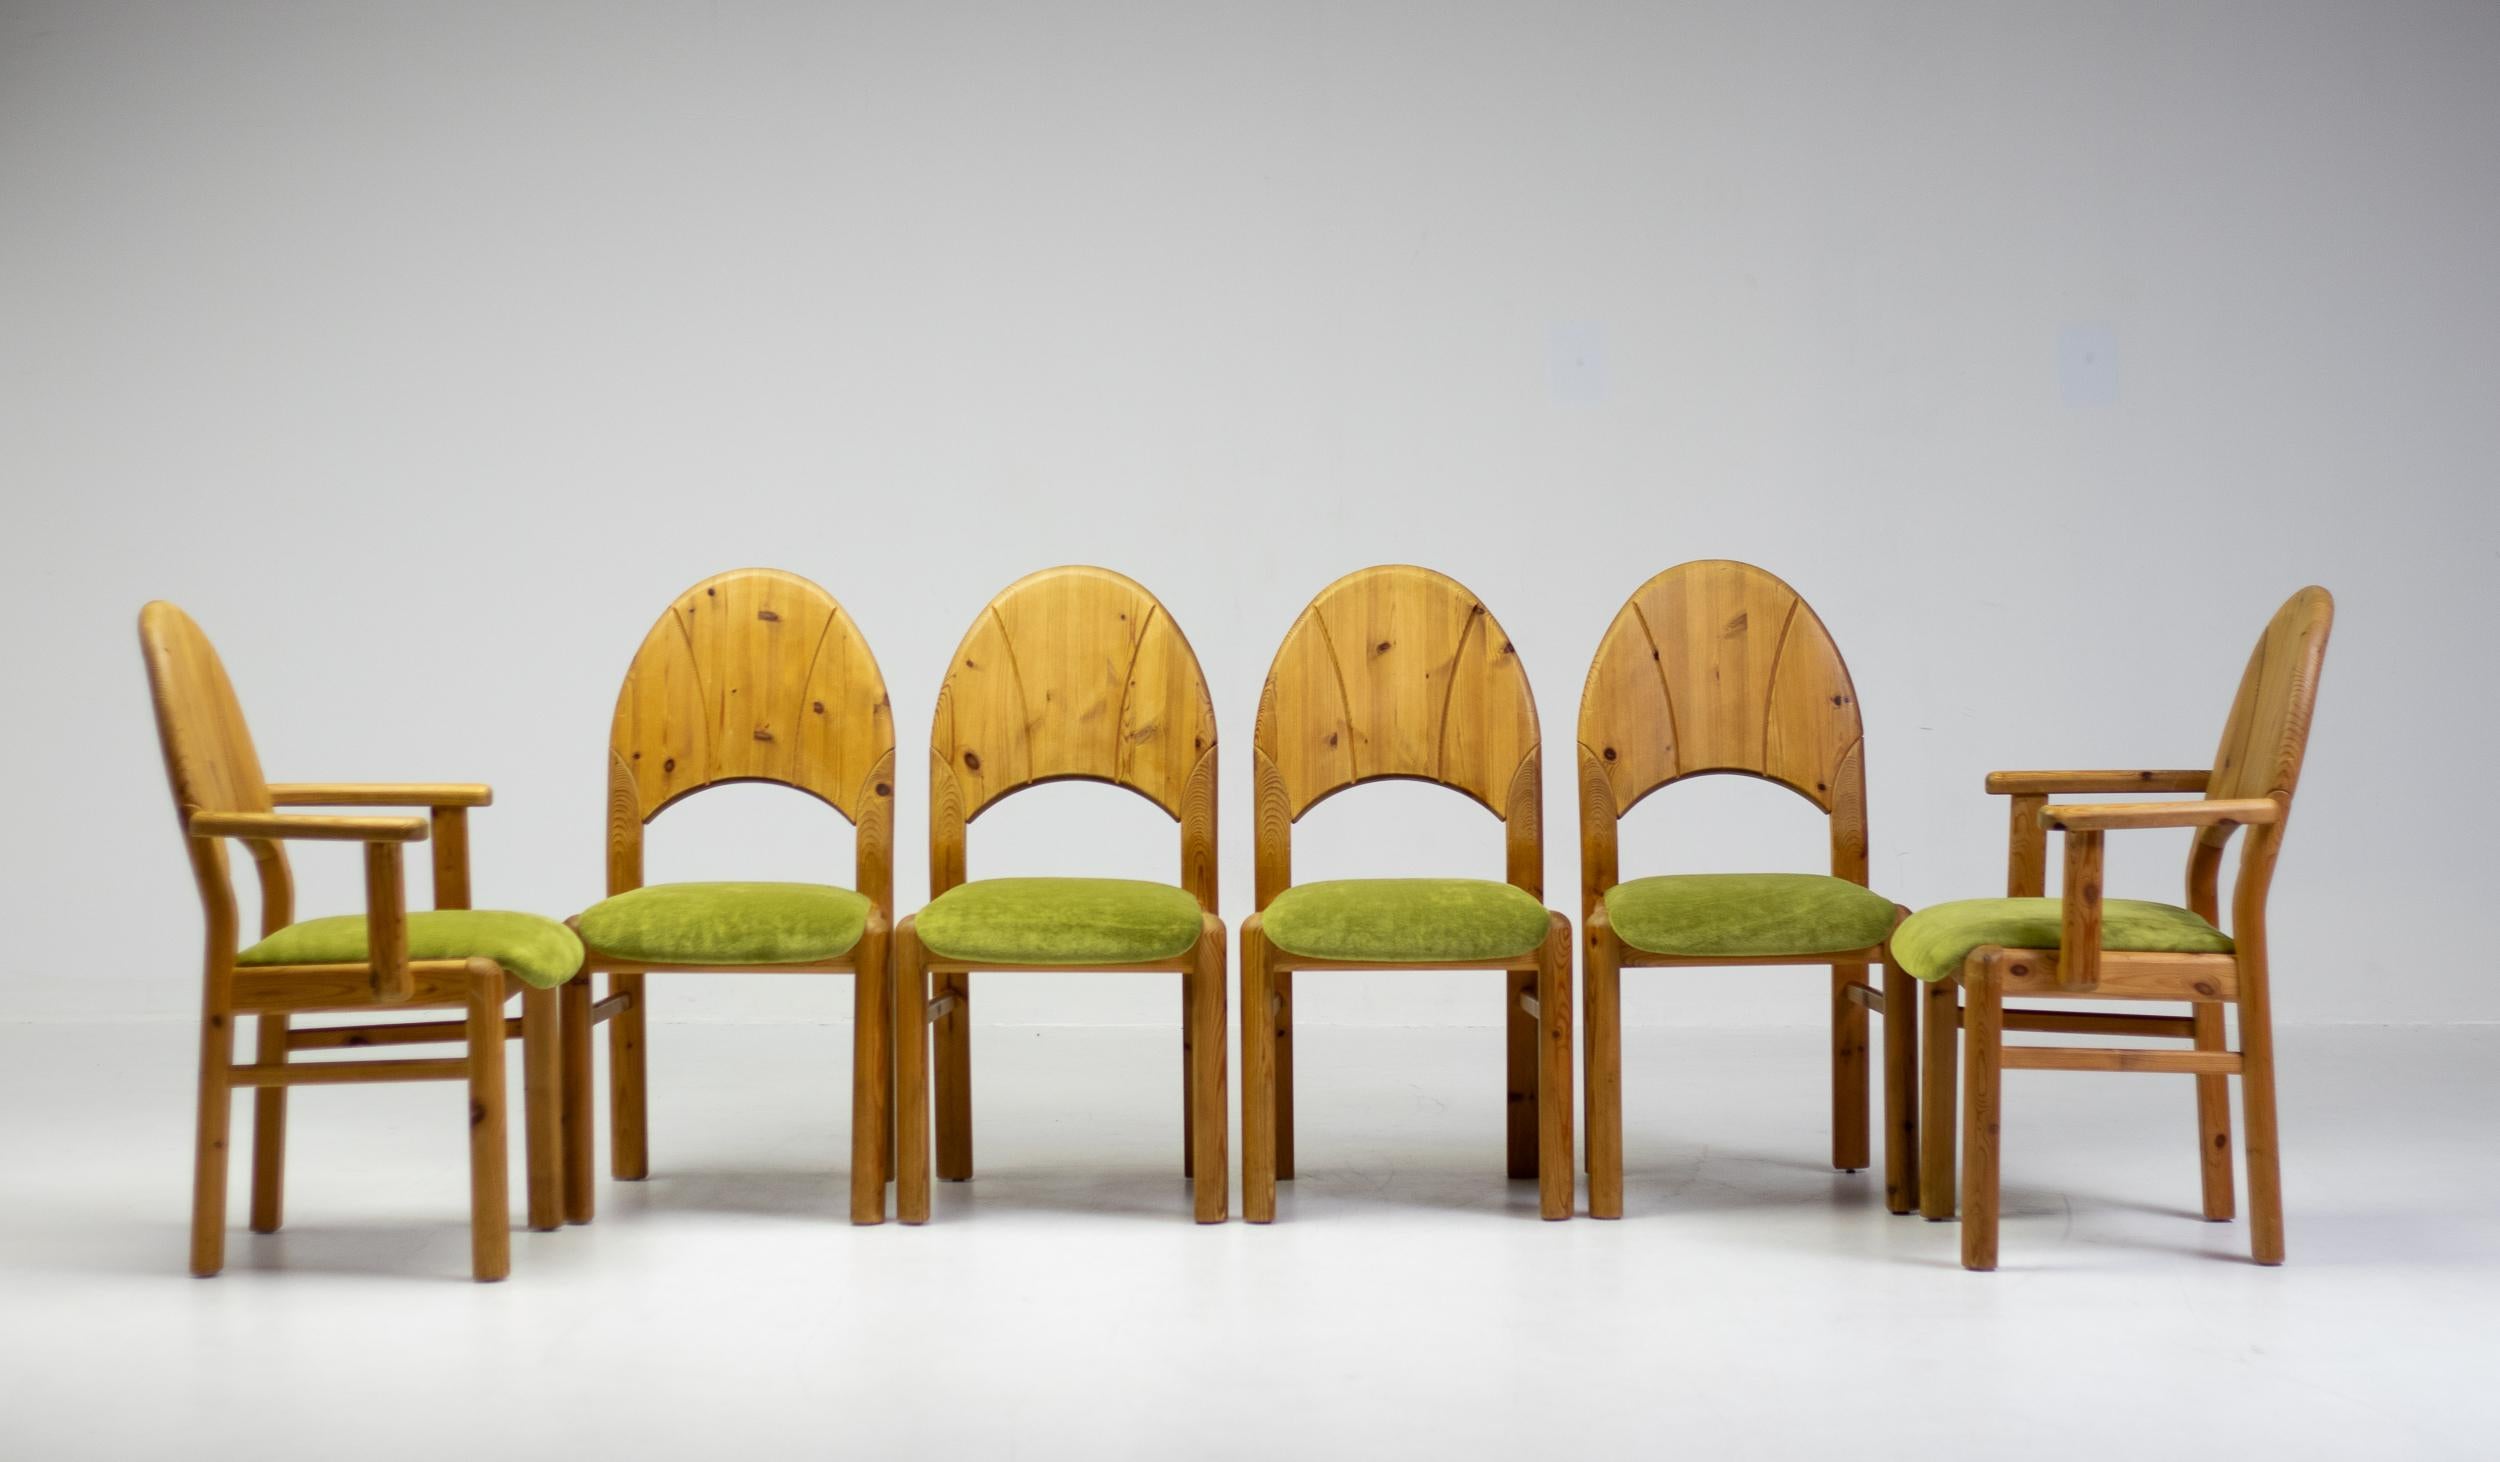 Merveilleux ensemble de 4 chaises latérales et 2 chaises à bras en pin de l'Oregon, sculpté dans le style The Scandinavian Mid Century Modern, avec une nouvelle tapisserie en tissu éponge vert gazon. Il s'agit d'un ensemble très convivial et